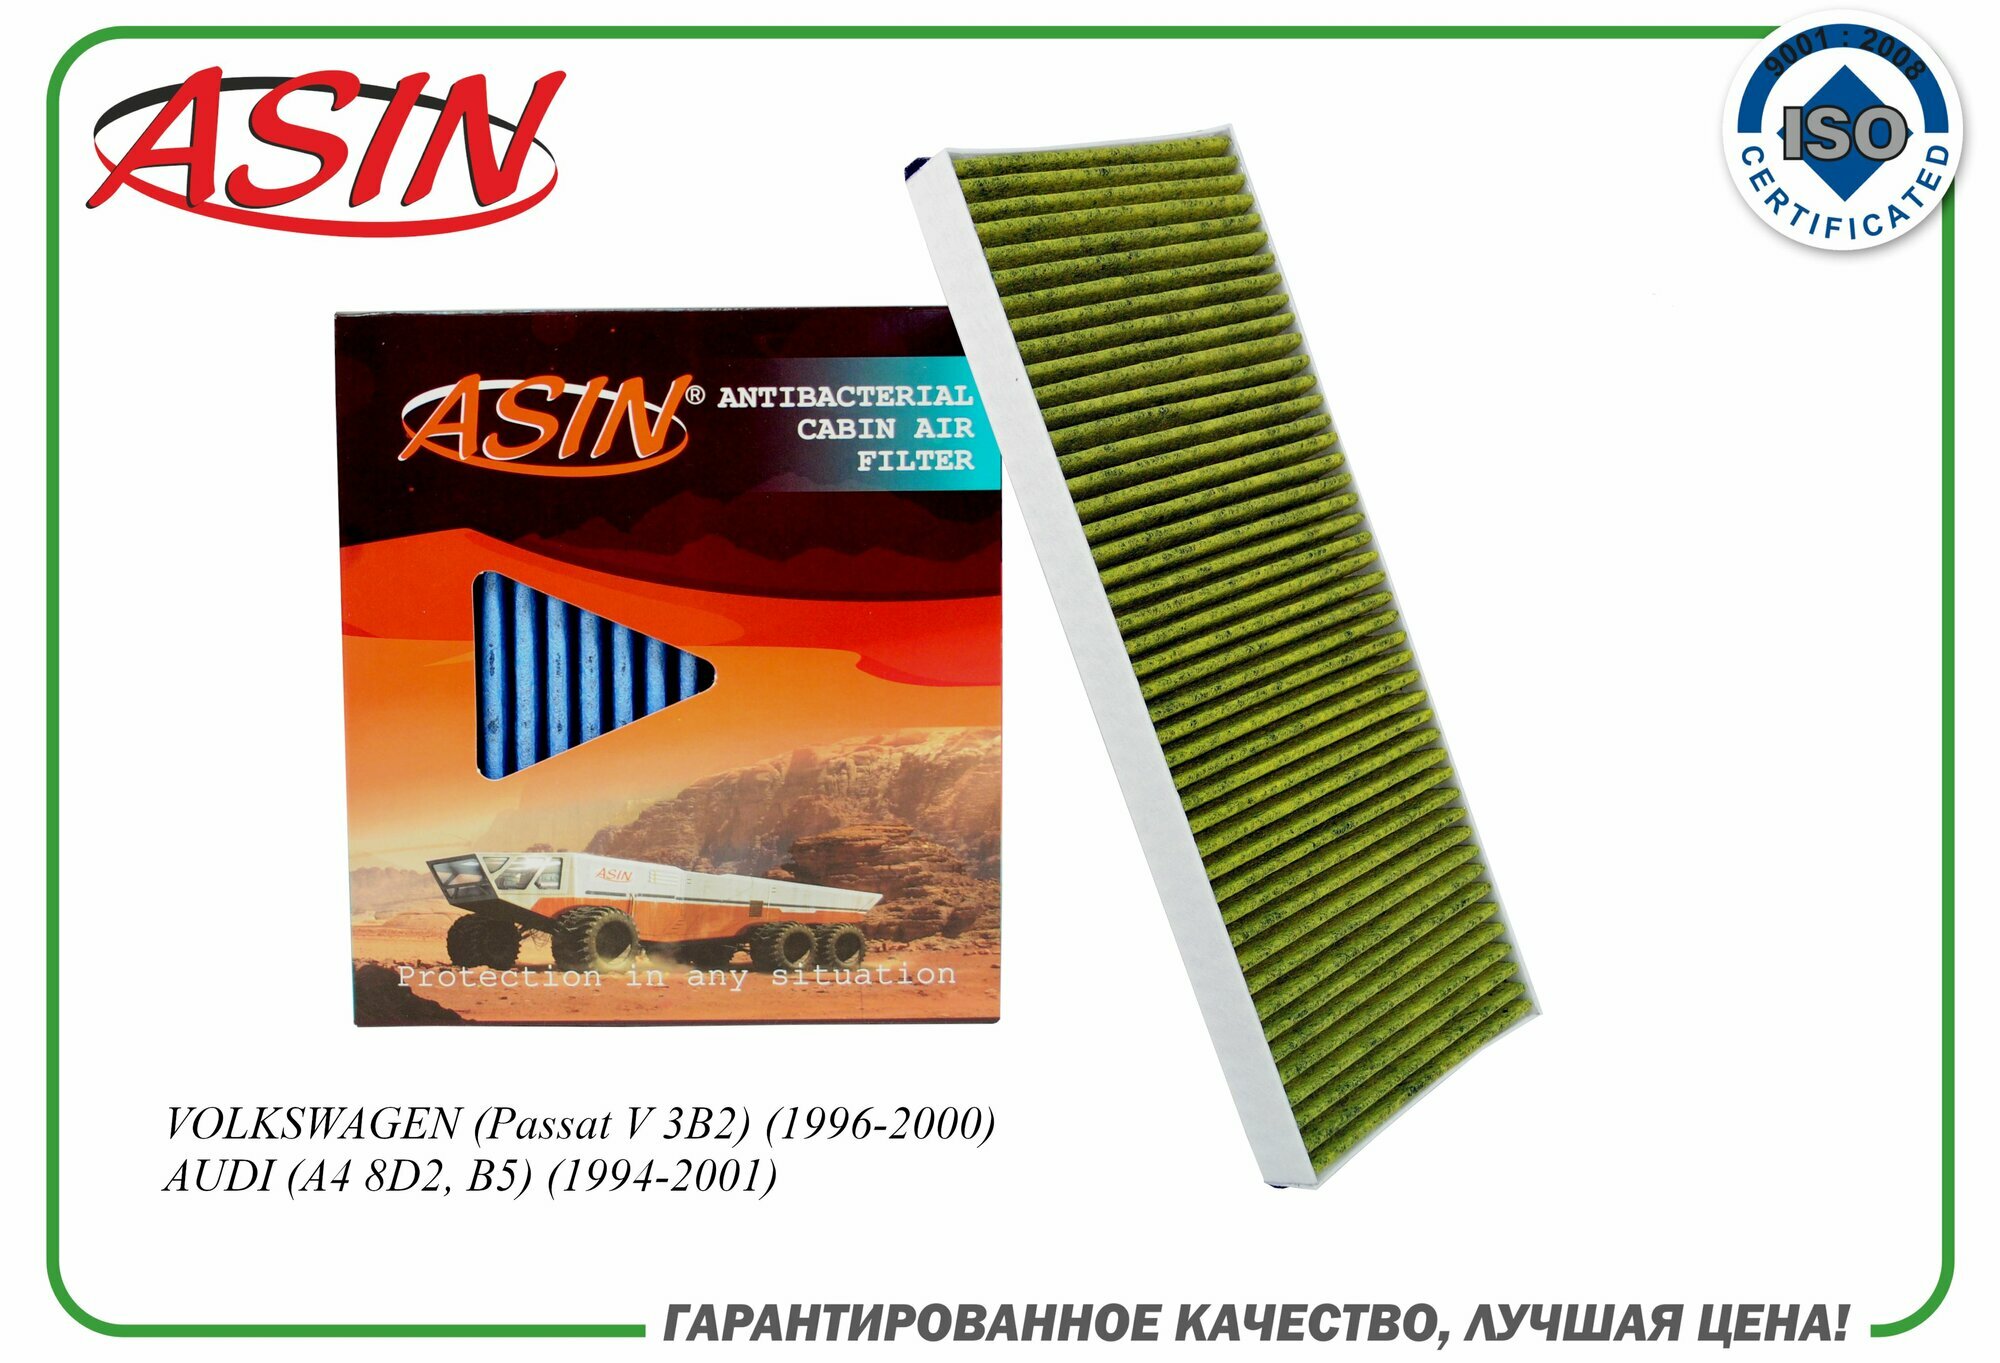 Фильтр салонный 8A0819439B ASIN. FC2829A (антибактериальный, угольный) для VOLKSWAGEN (Passat V 3B2) (1996-2000) AUDI (A4 8D2, B5) (1994-2001)